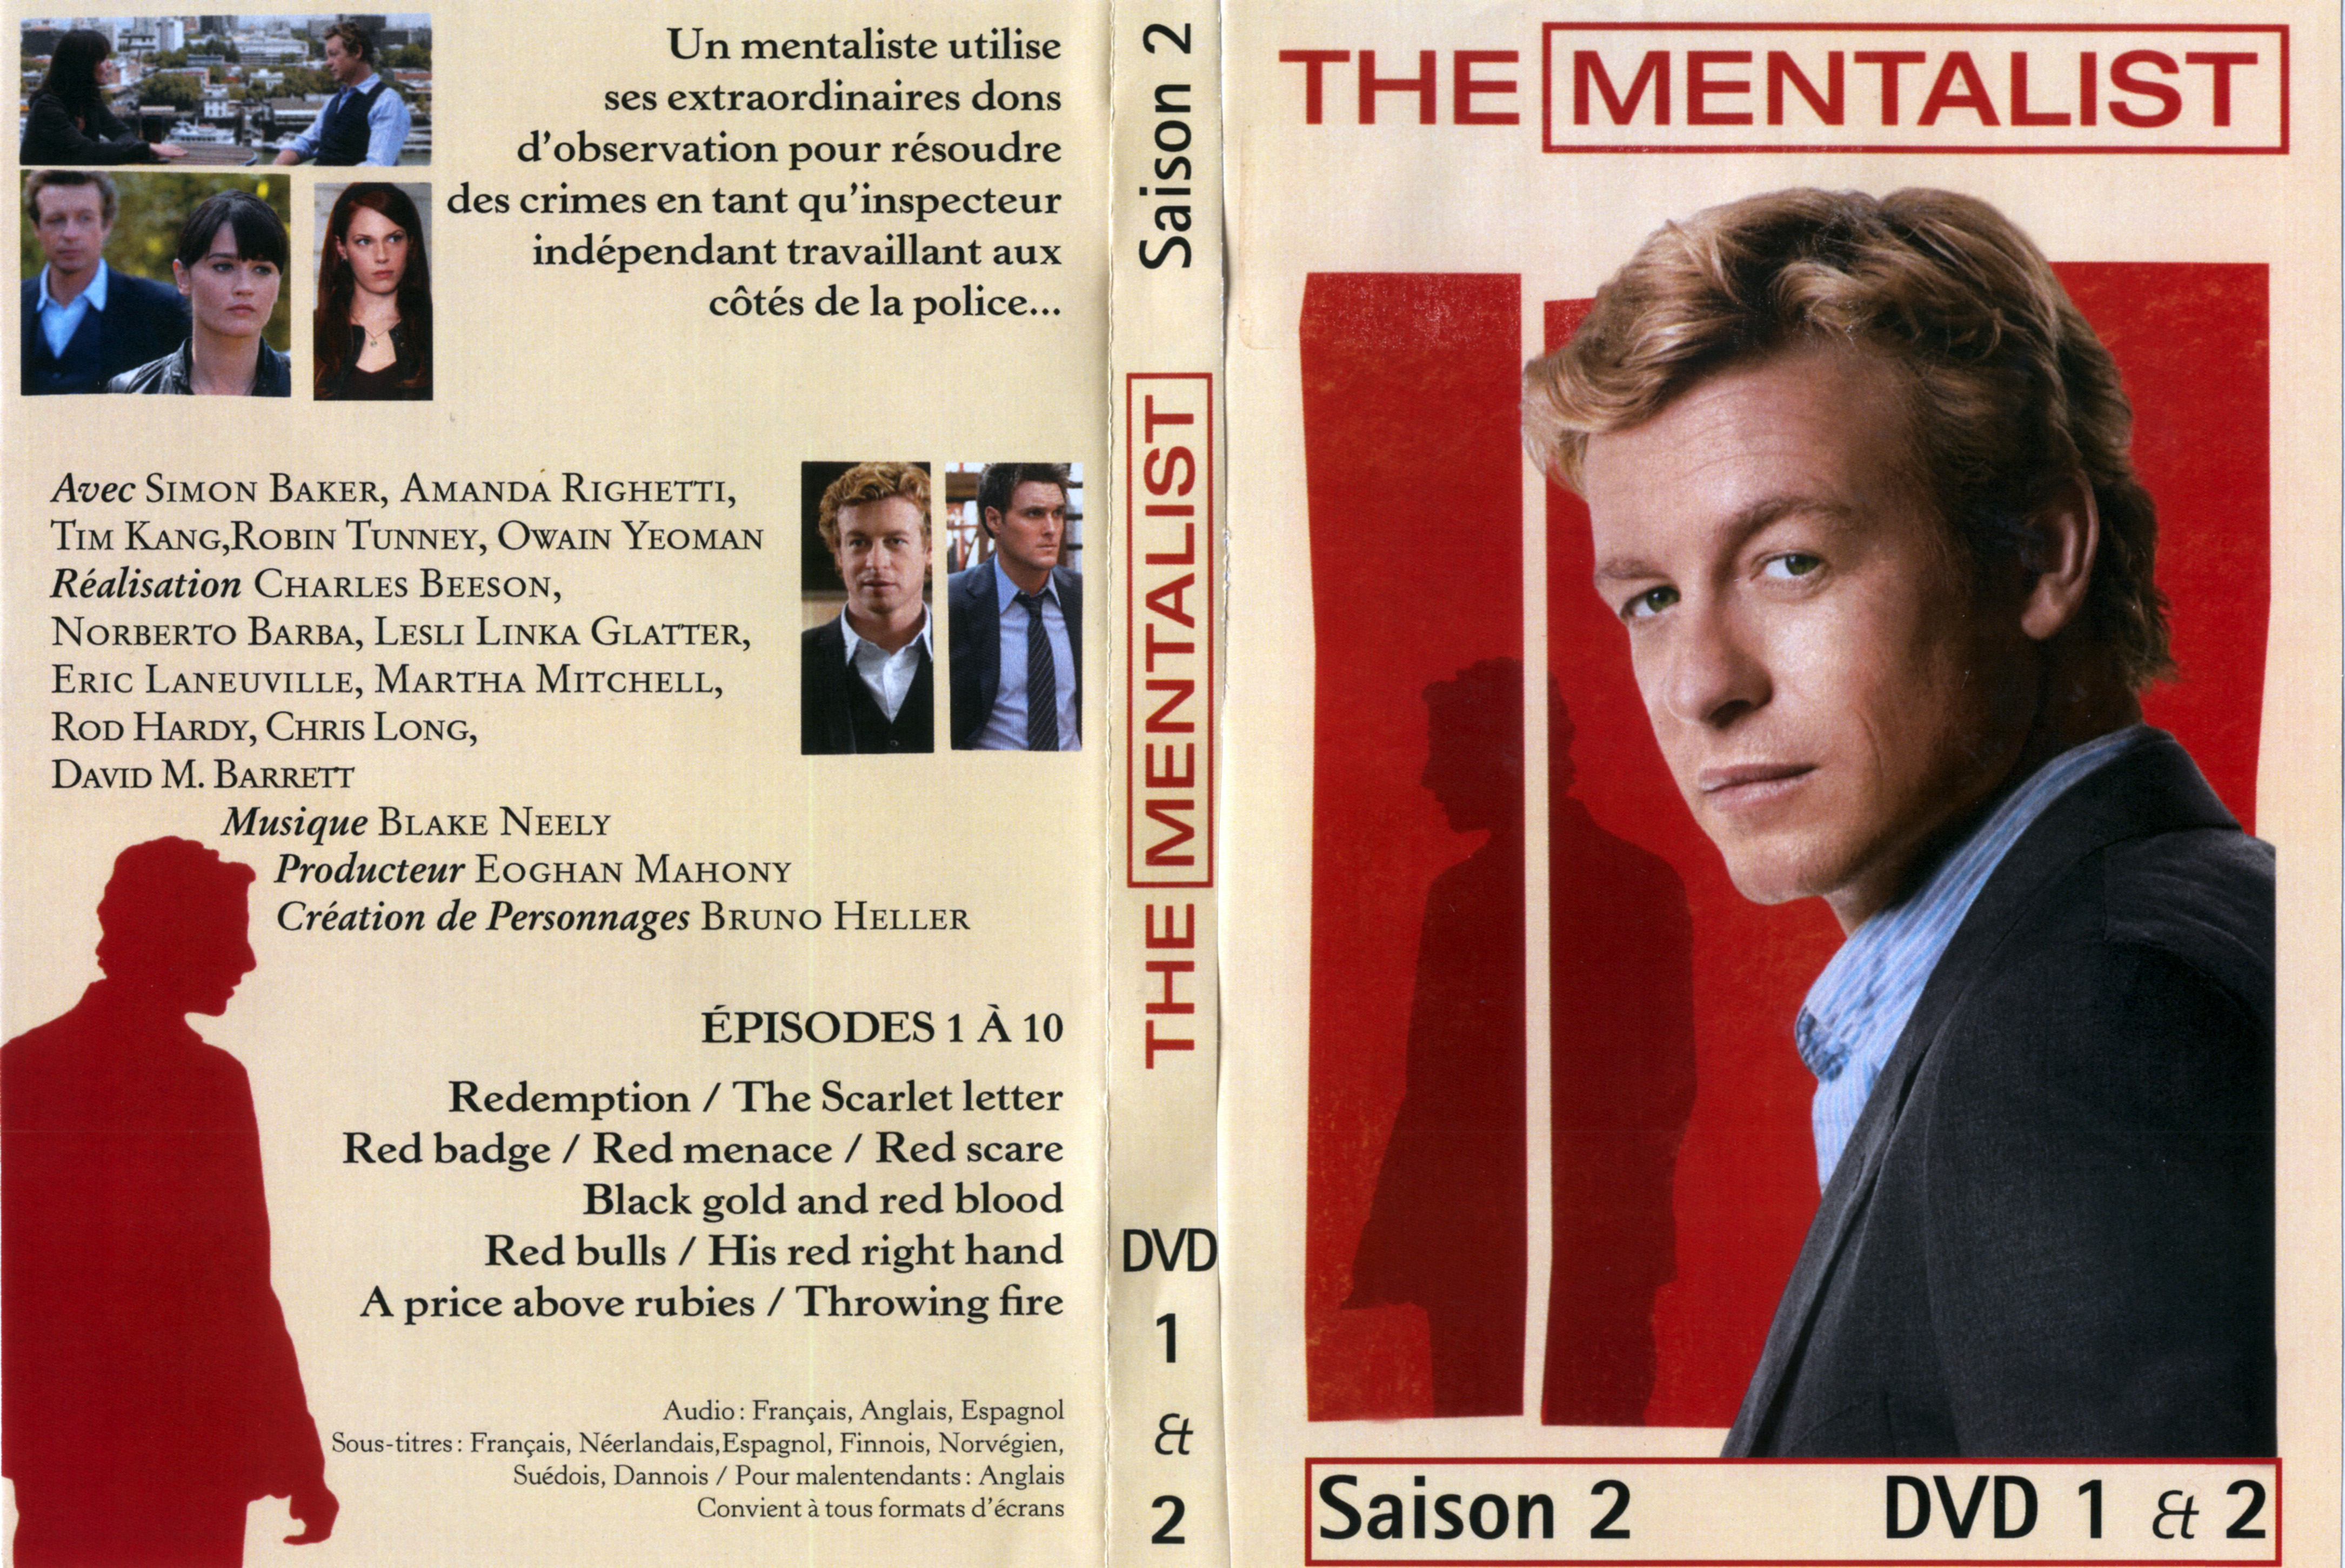 Jaquette DVD The mentalist Saison 2 DVD 1